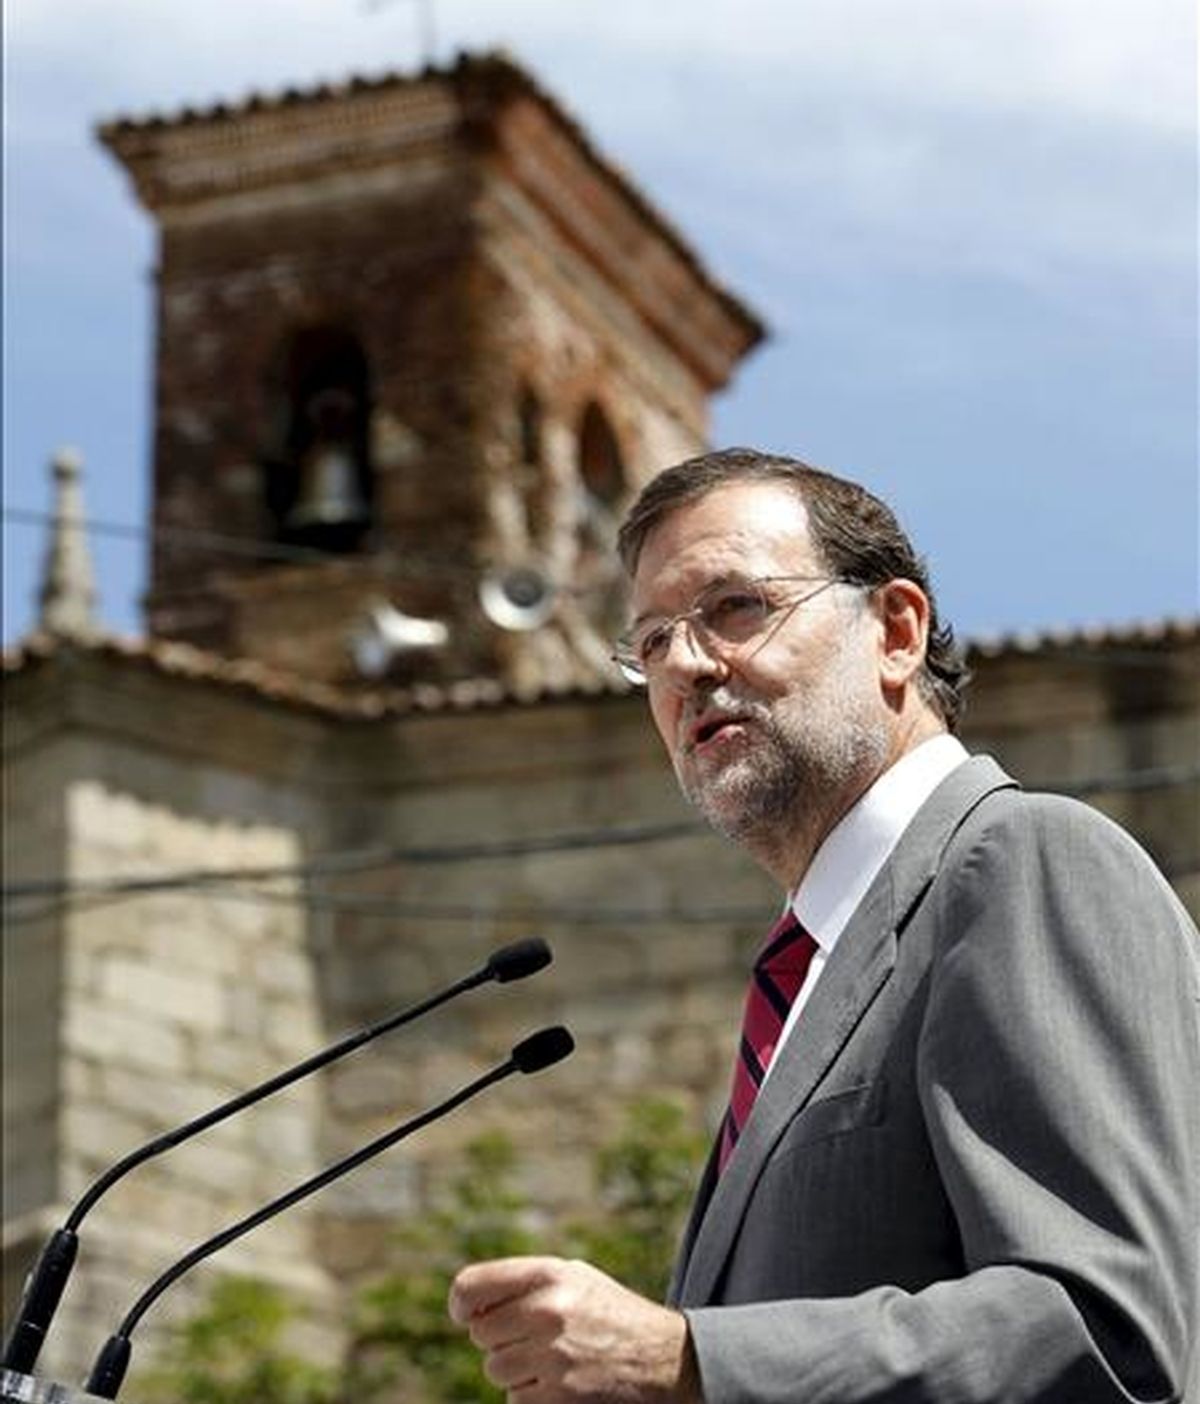 El presidente del PP, Mariano Rajoy, interviene durante el homenaje que ha recibido el alcalde de la localidad abulense de Cuevas del Valle, Licinio Prieto, por ser, a sus 87 años, el regidor más viejo de España. EFE